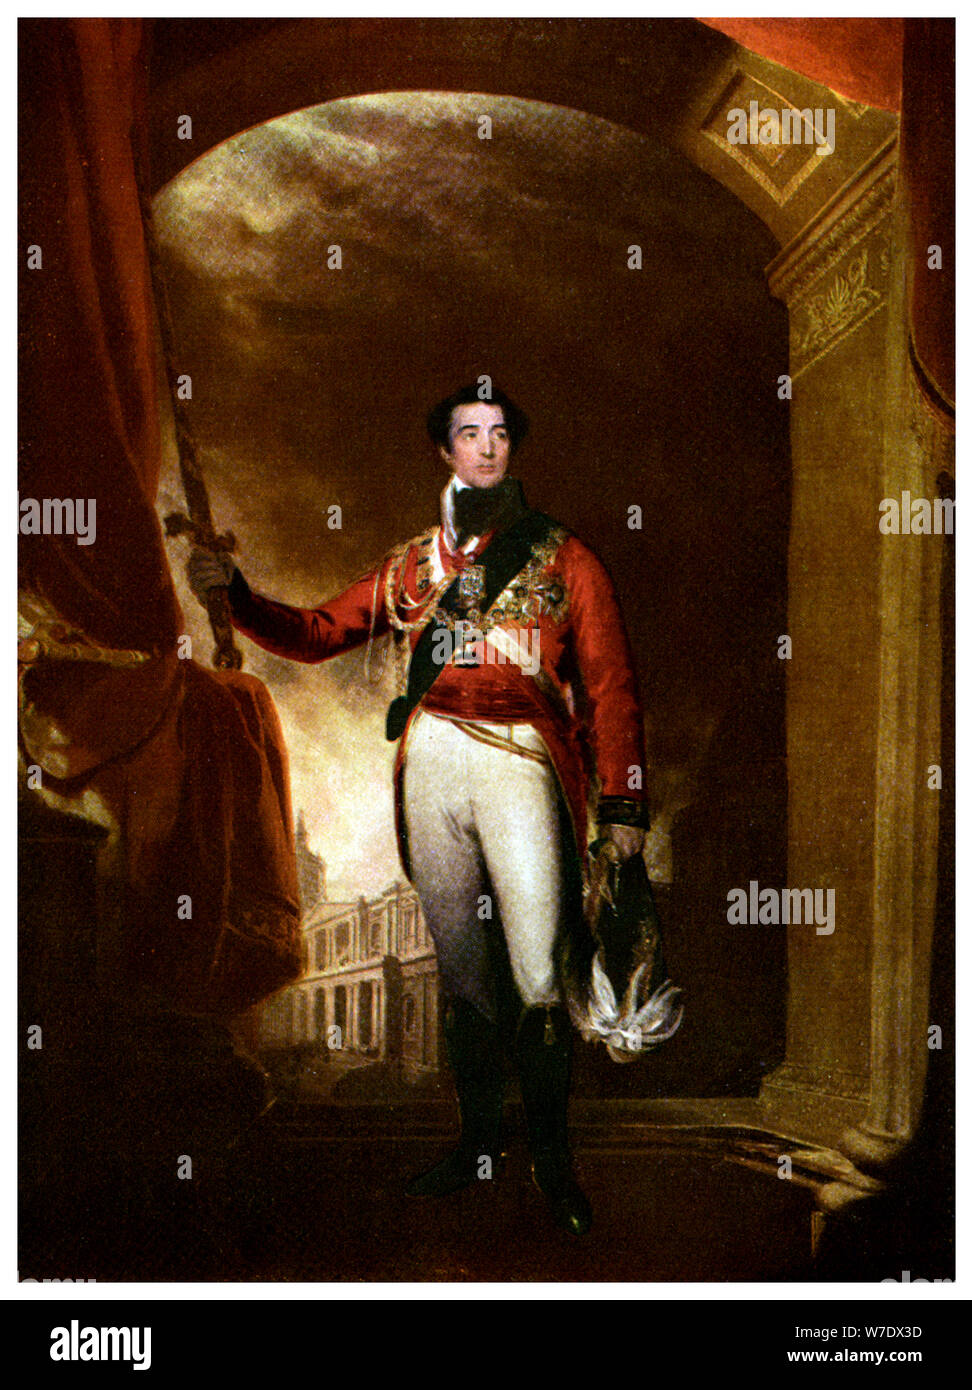 Le duc de Wellington, Irlandais de naissance soldat britannique et homme d'État, 19ème siècle (1956). Artiste : Inconnu Banque D'Images